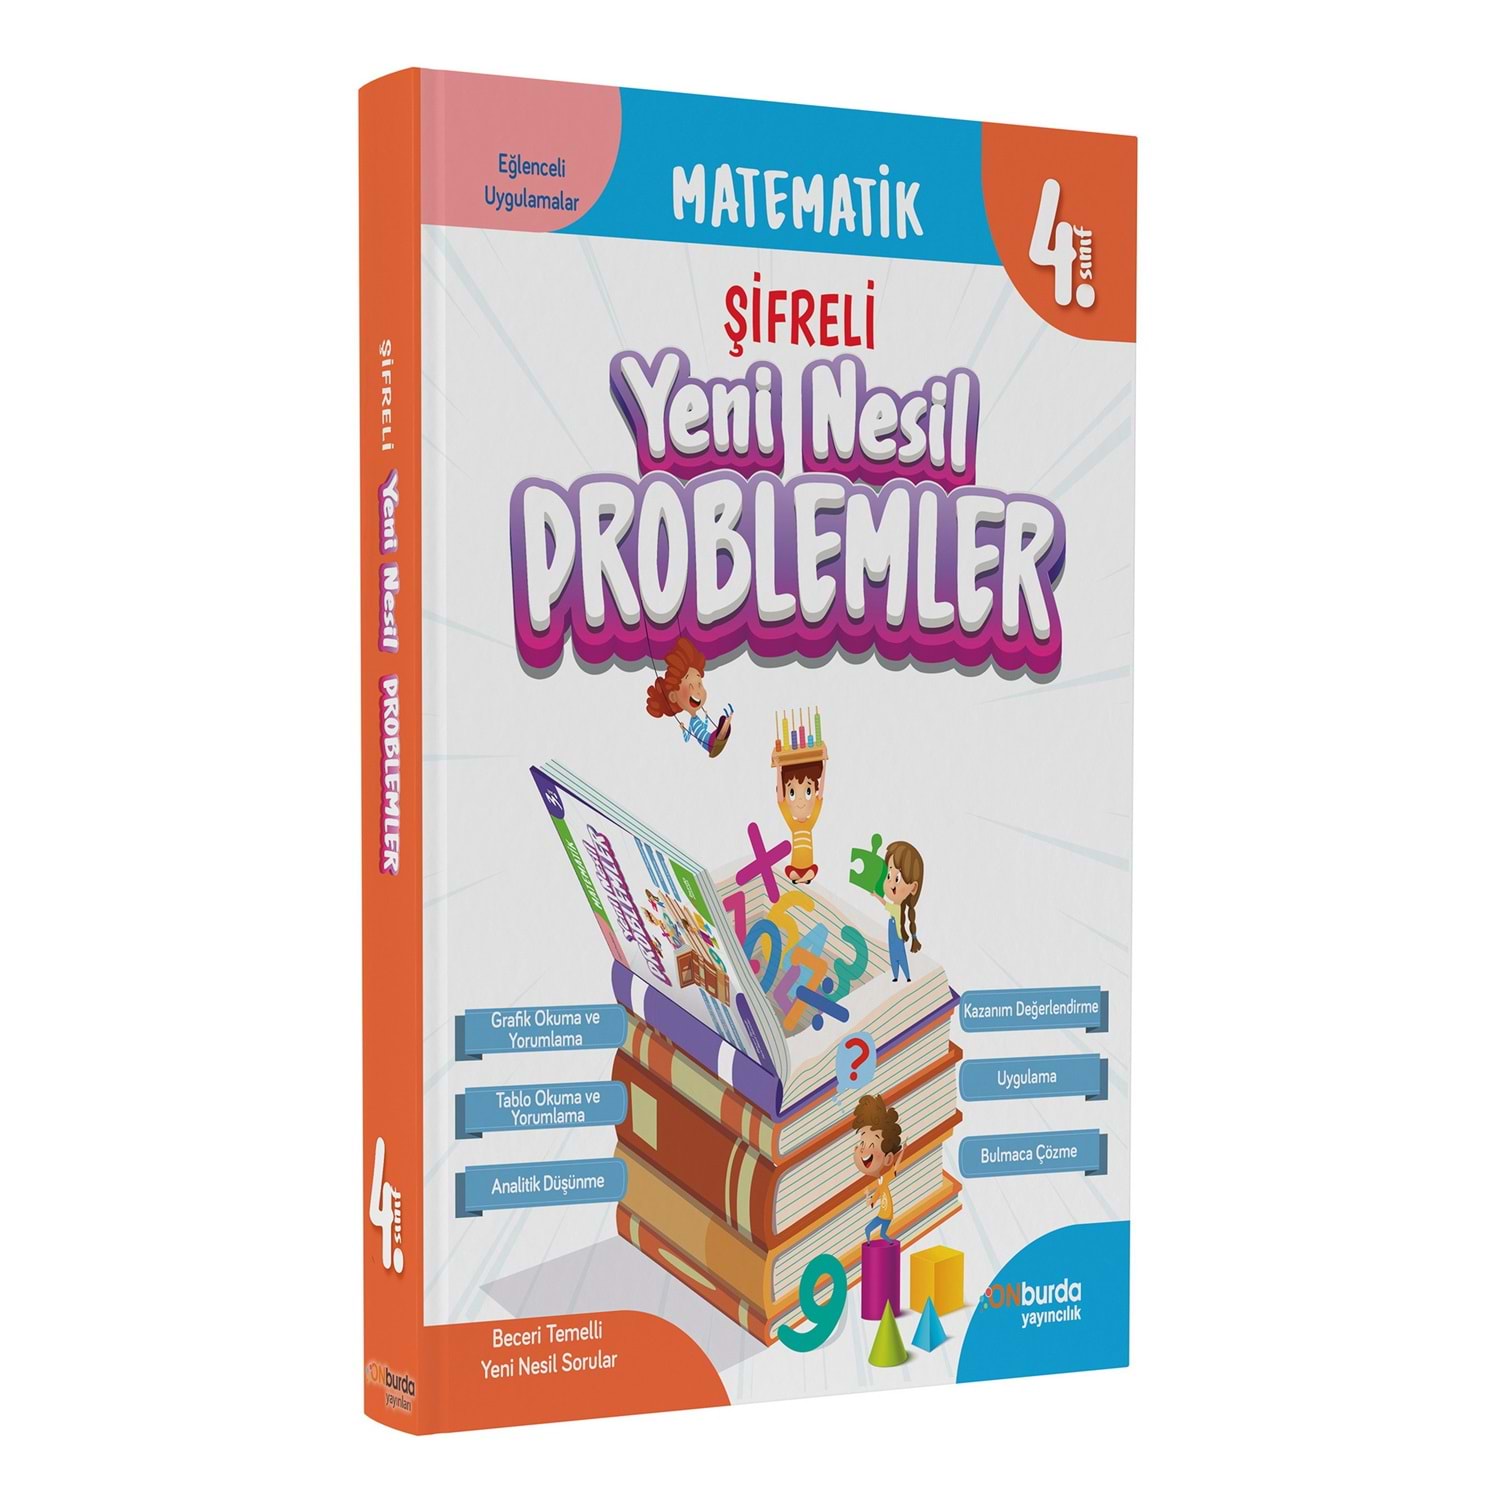 Onburda Yayınları 4. Sınıf Matematik Yeni Nesil Problemler Soru Bankası